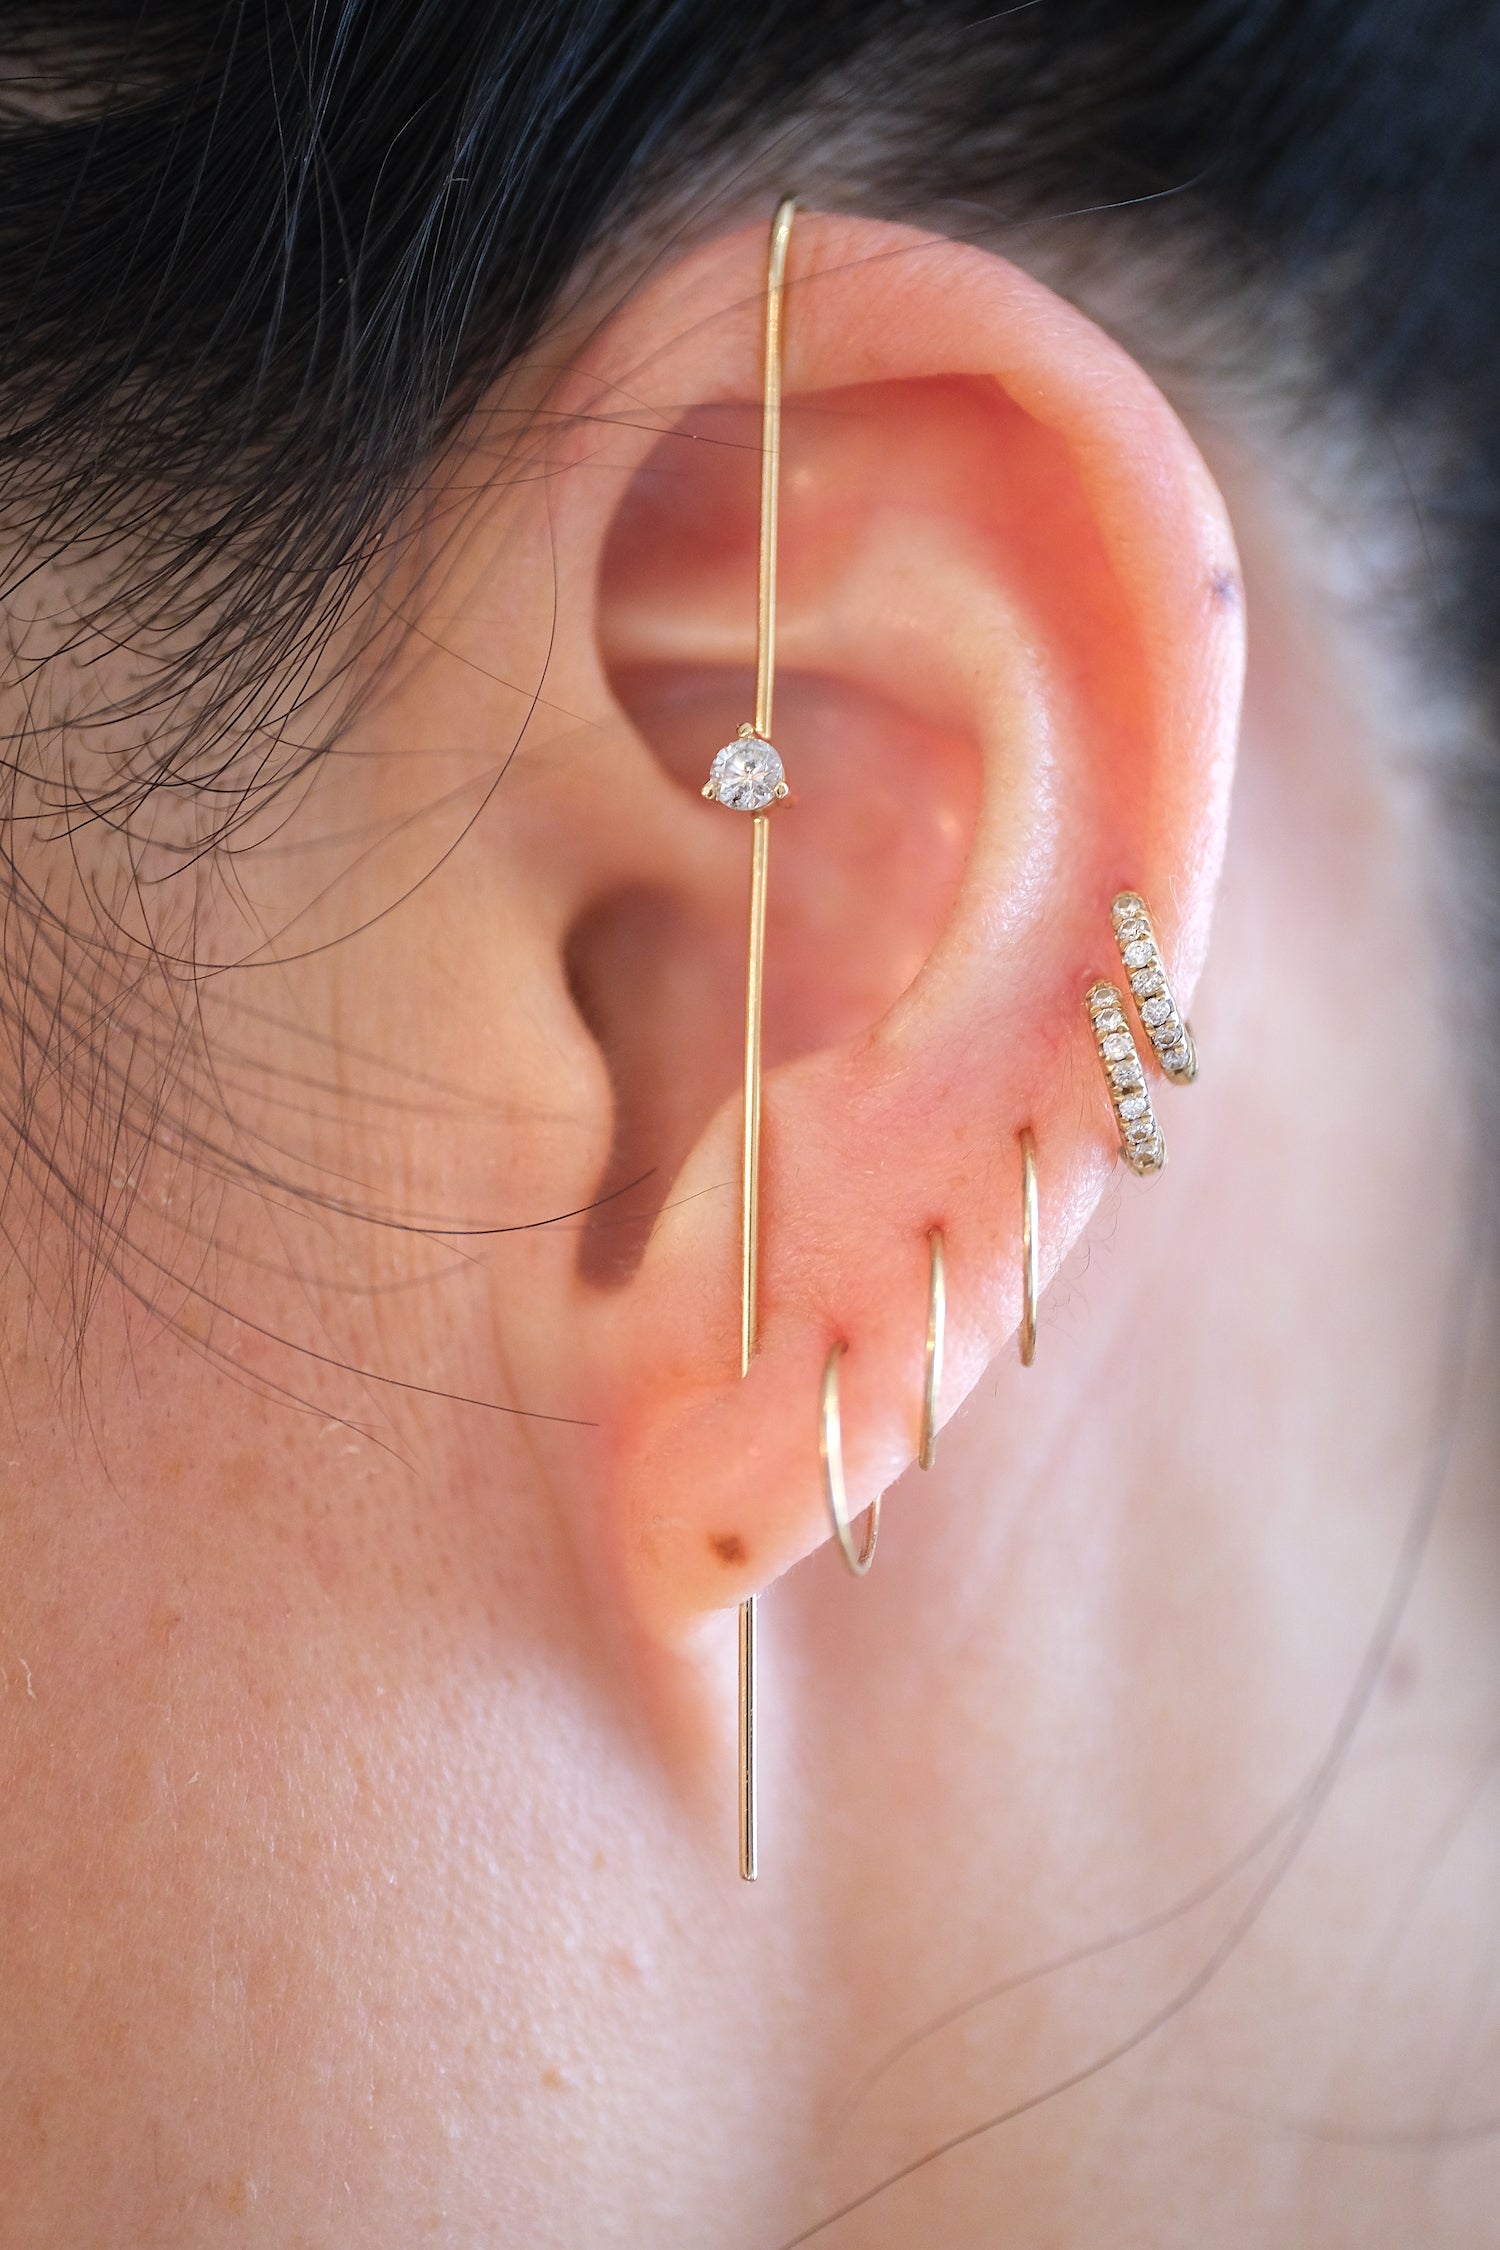 LABULGARA Precious Gem Needle Earring